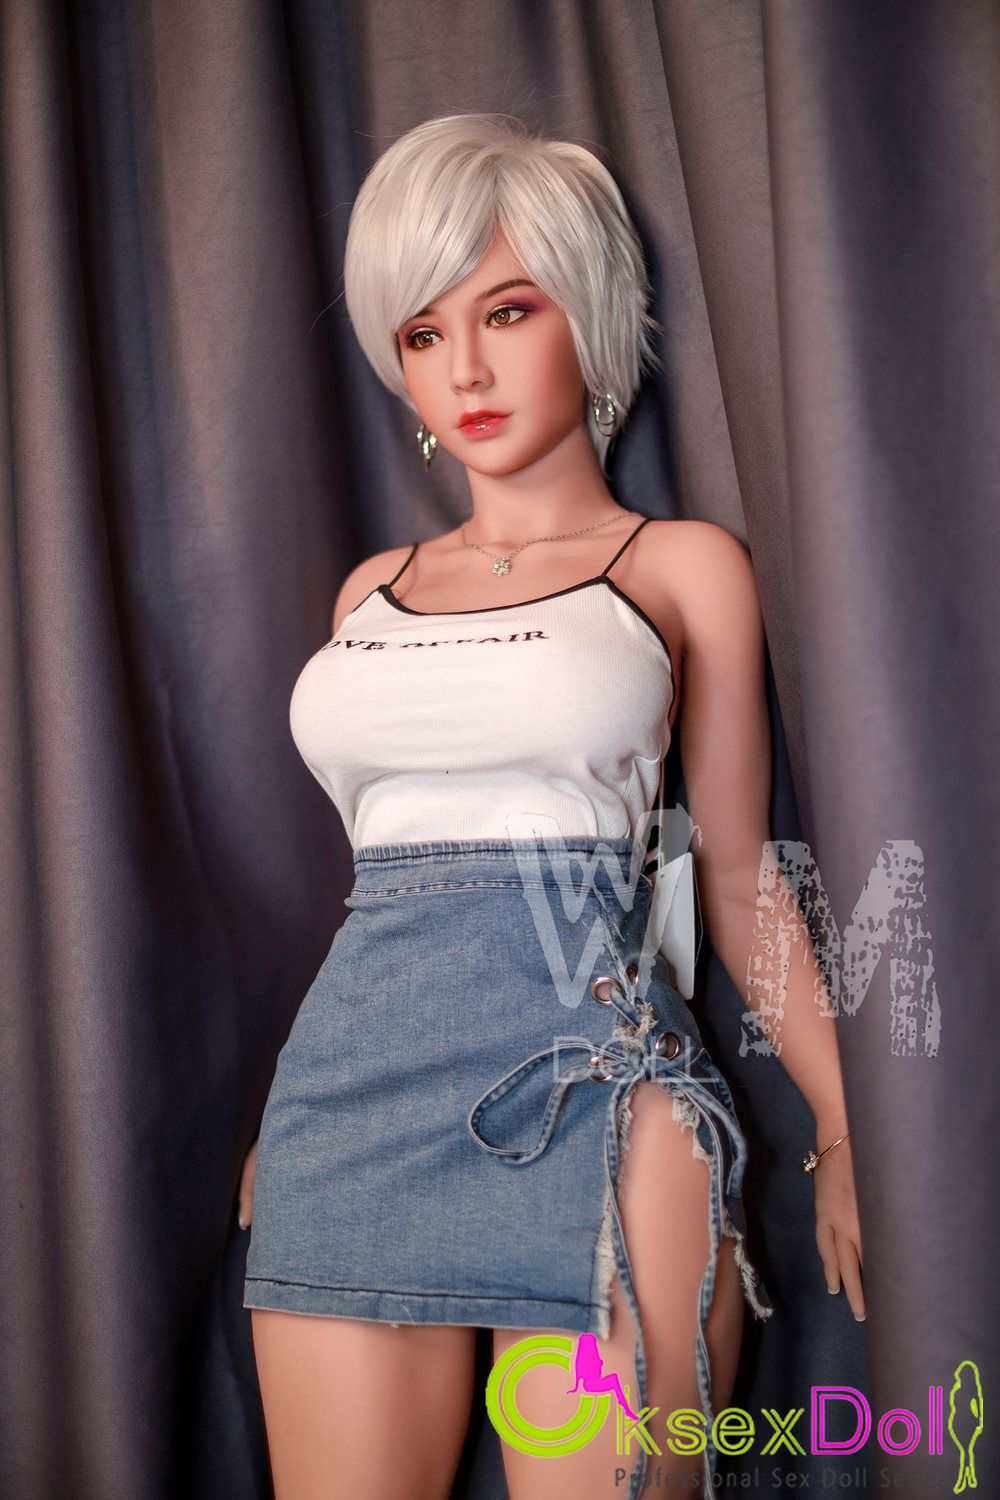 170cm Sex doll images